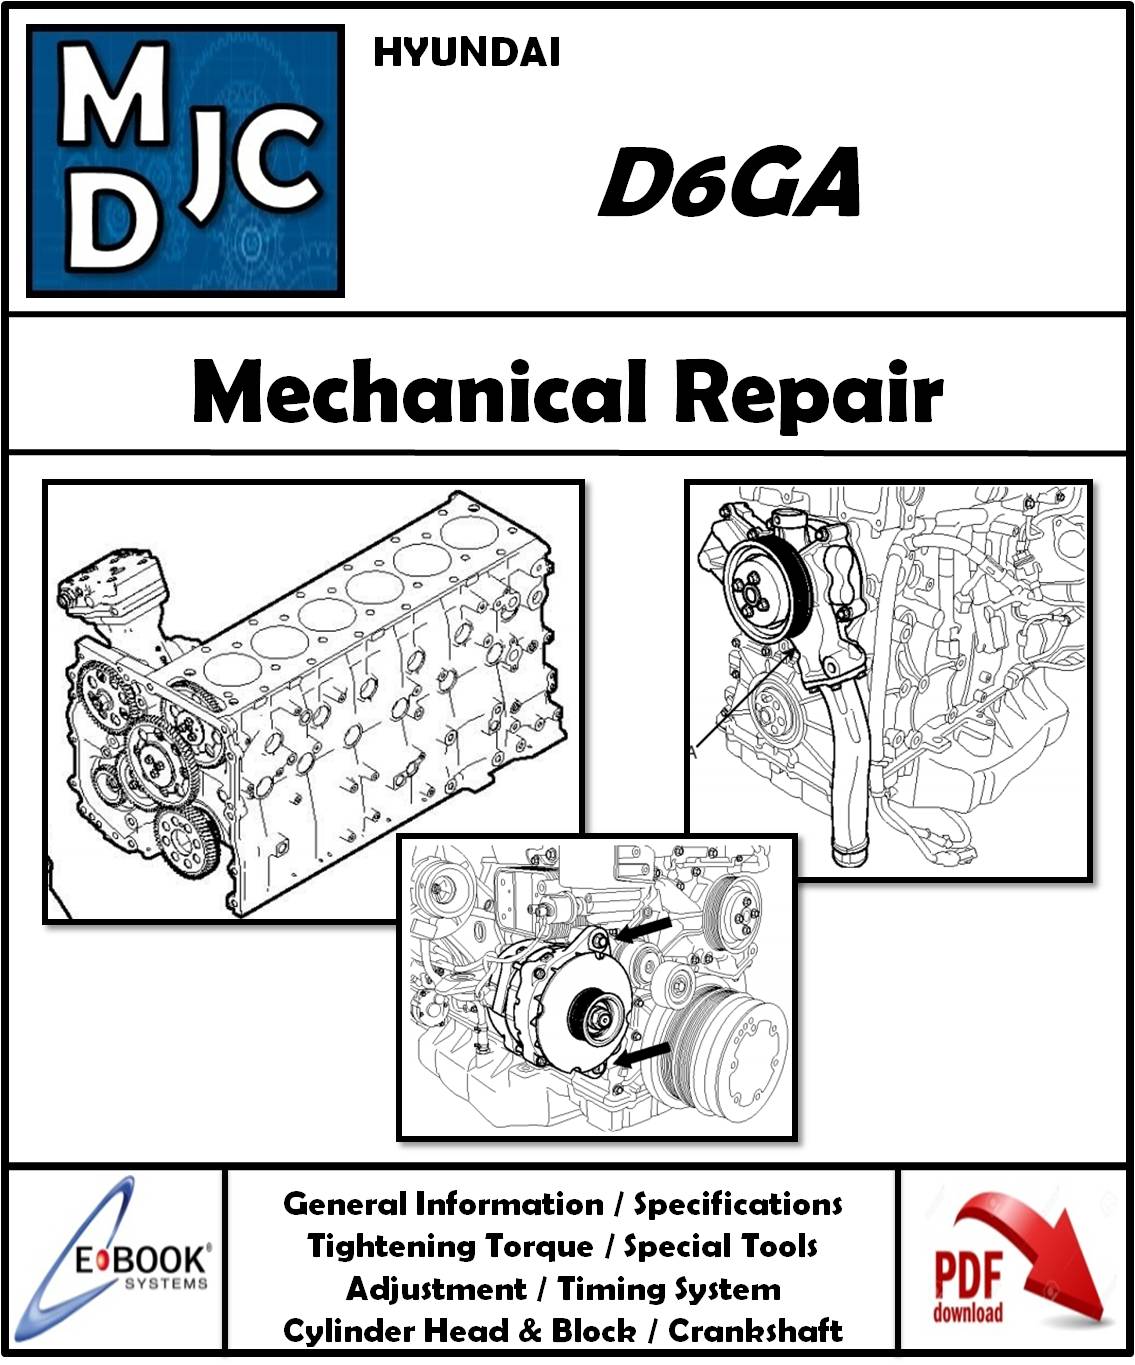 Manual de Taller (Reparación Mecánica) Motor Hyundai D6GA